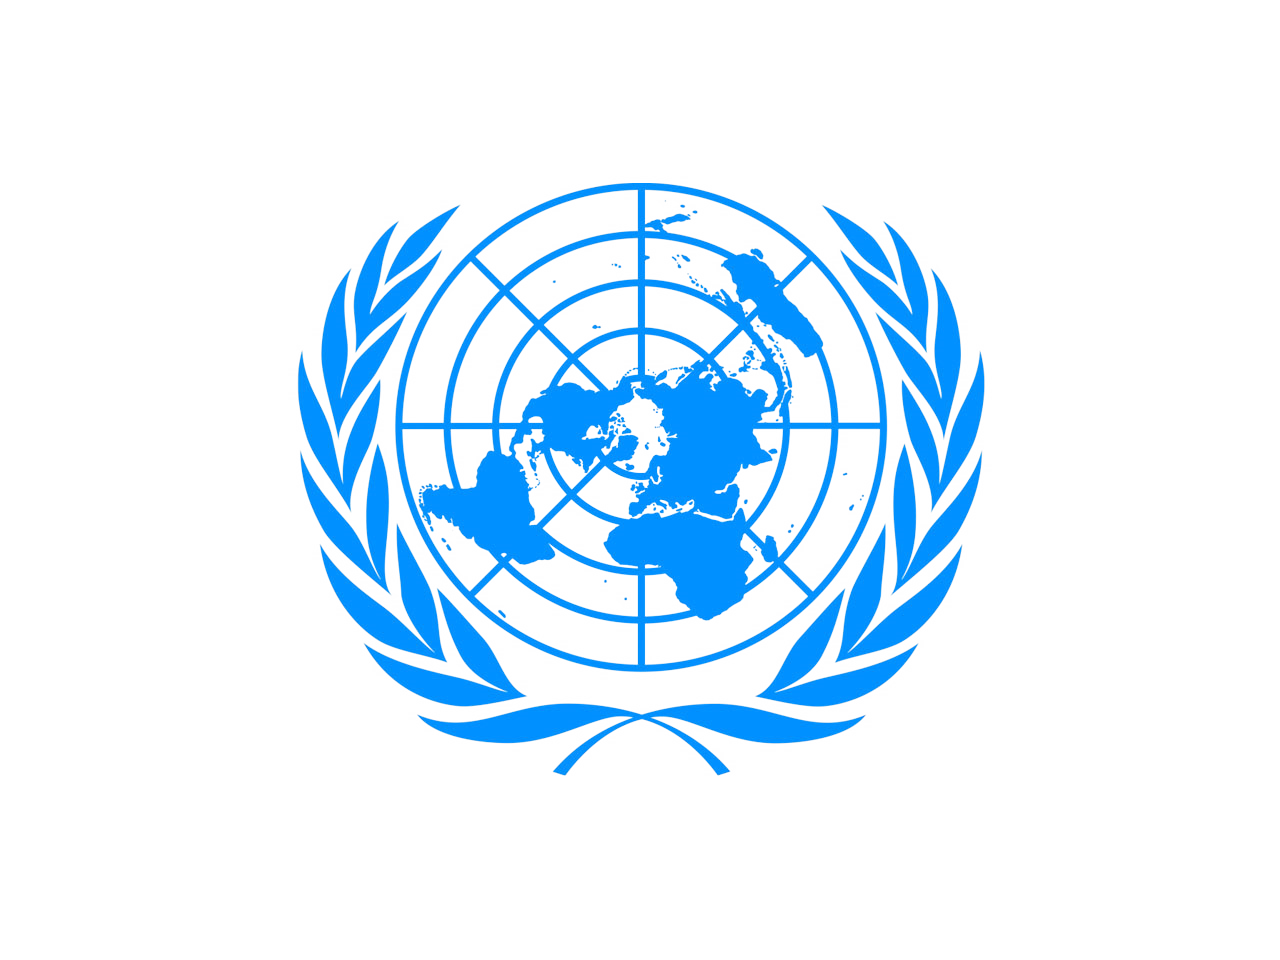 Всемирные организации оон. Европейская экономическая комиссия ООН (ЕЭК ООН) эмблема. Генеральная Ассамблея ООН флаг. Комитет по внутреннему транспорту ЕЭК ООН. ЭКОСОС ООН 1945.